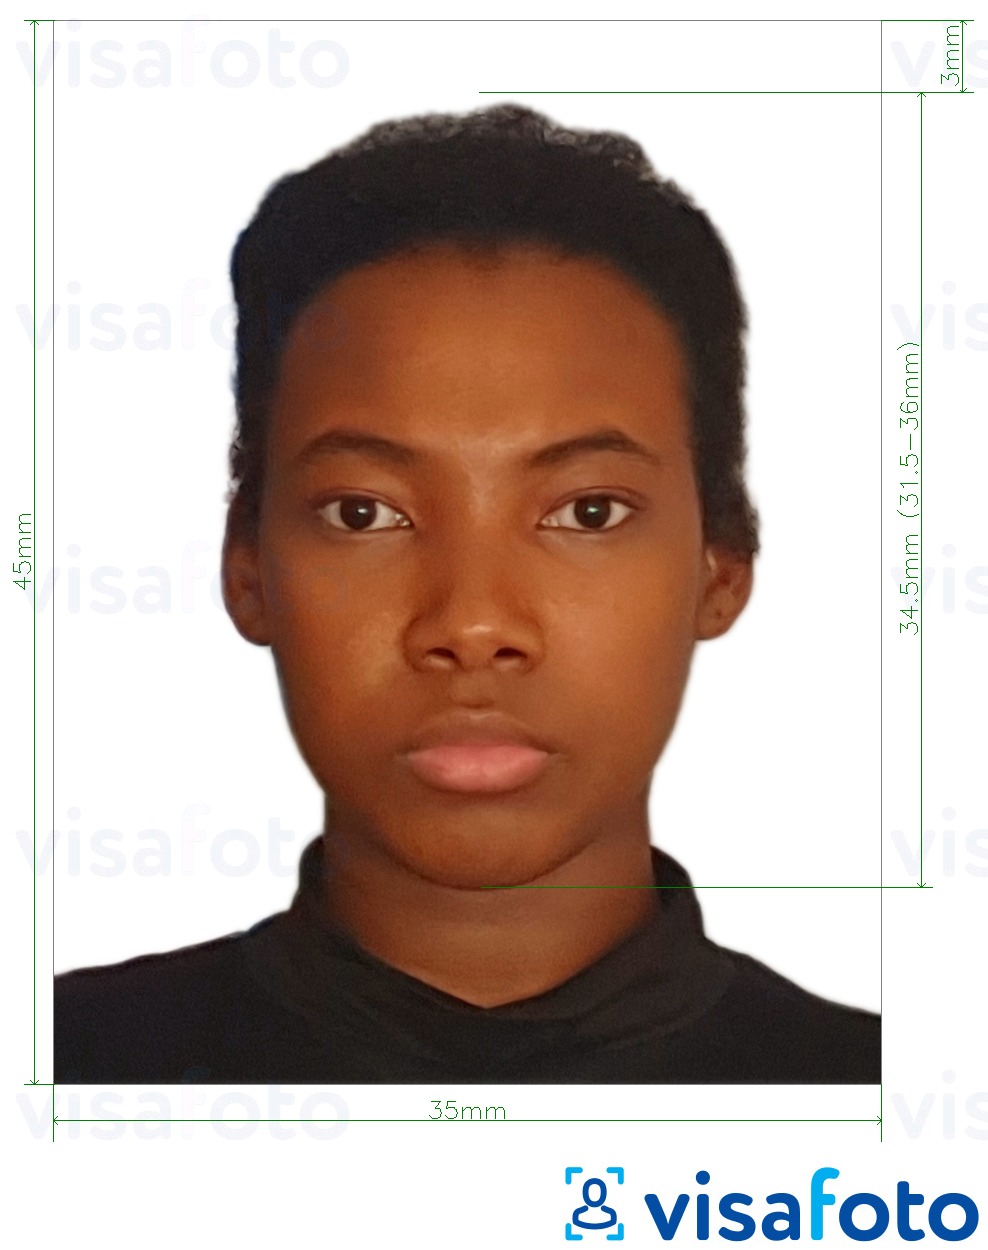 Exemples sur des photos pour Visa Mozambique 35x45 mm (3.5x4.5 cm) avec les spécifications de taille exactes